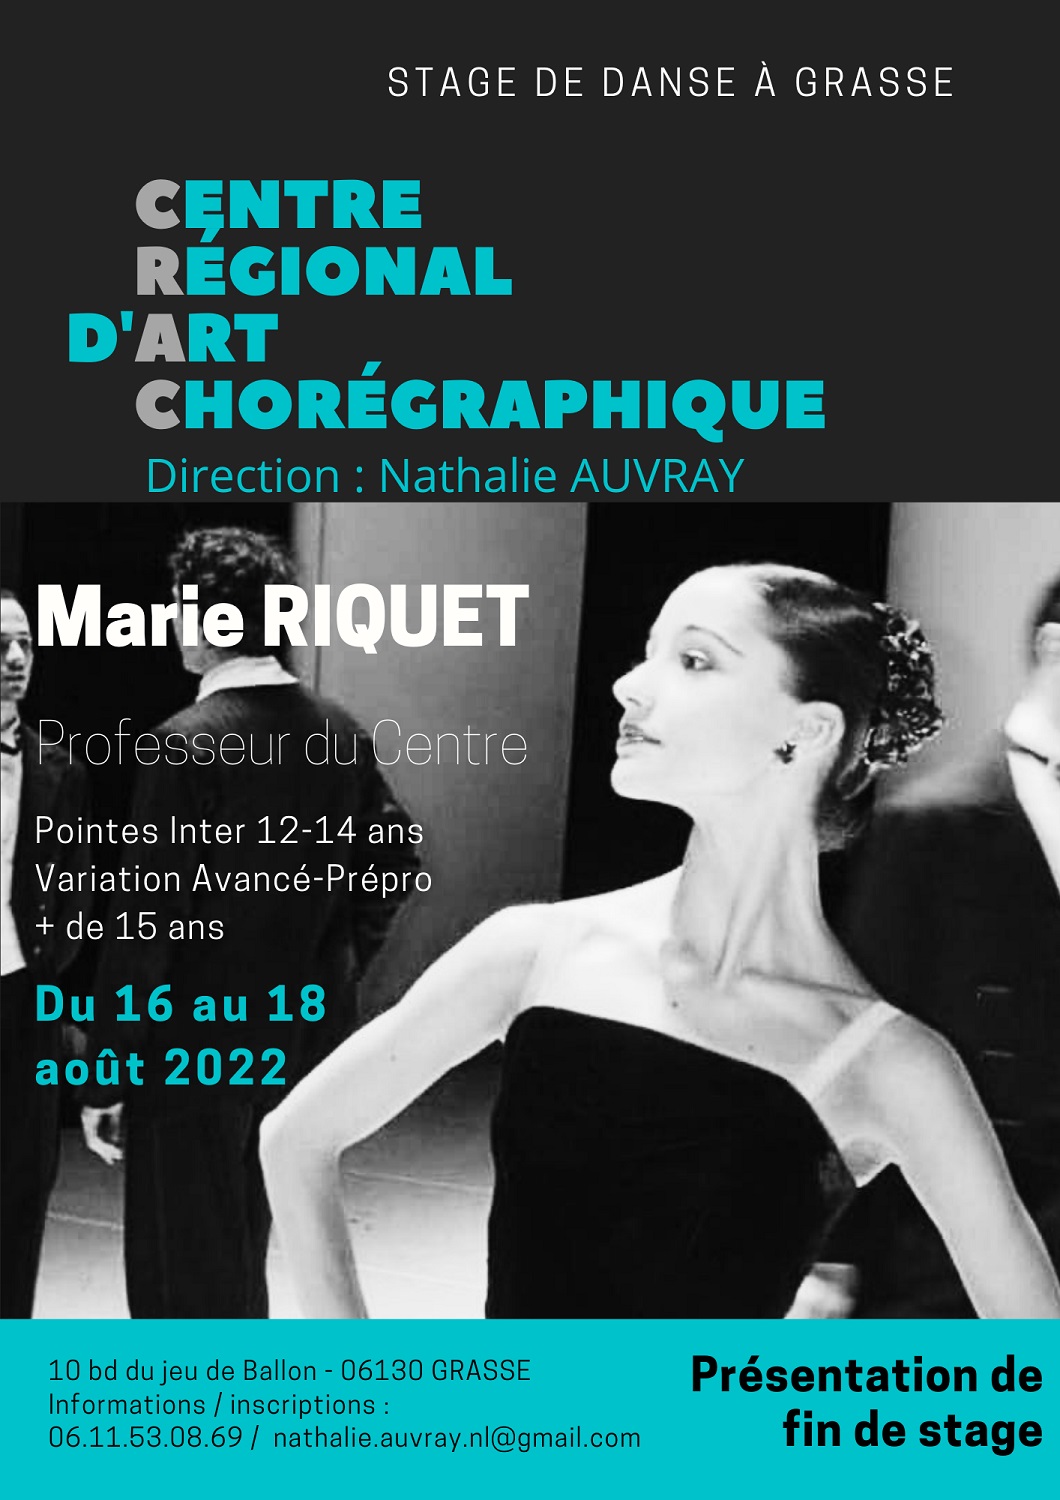 Marie Riquet